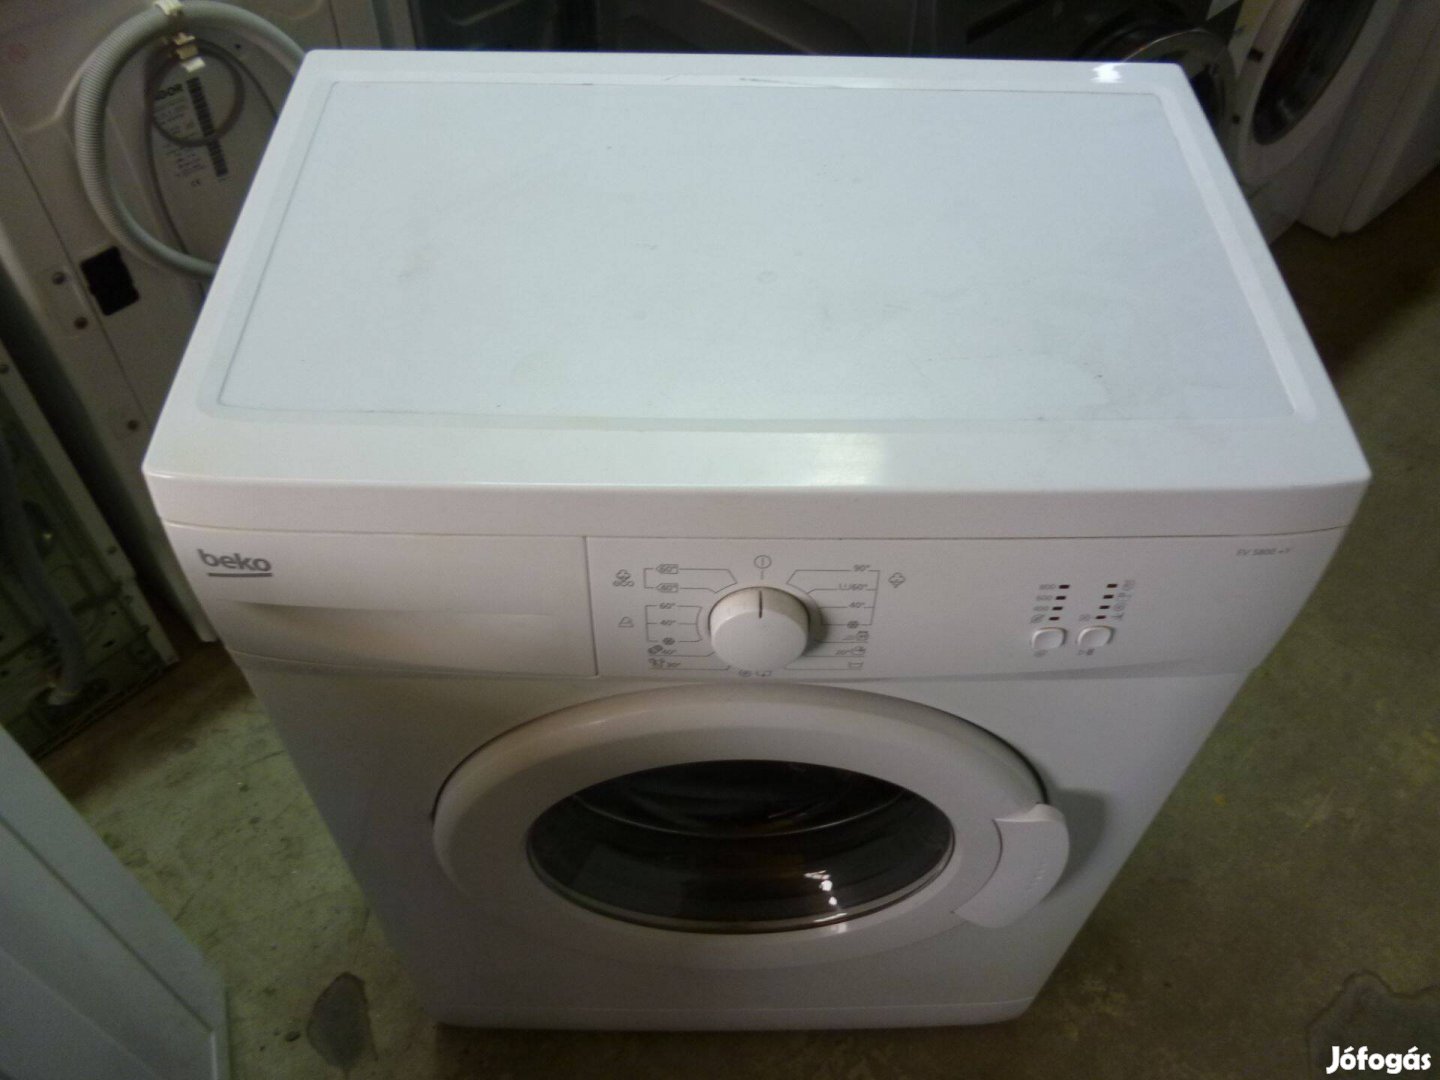 Használt automata mosógép